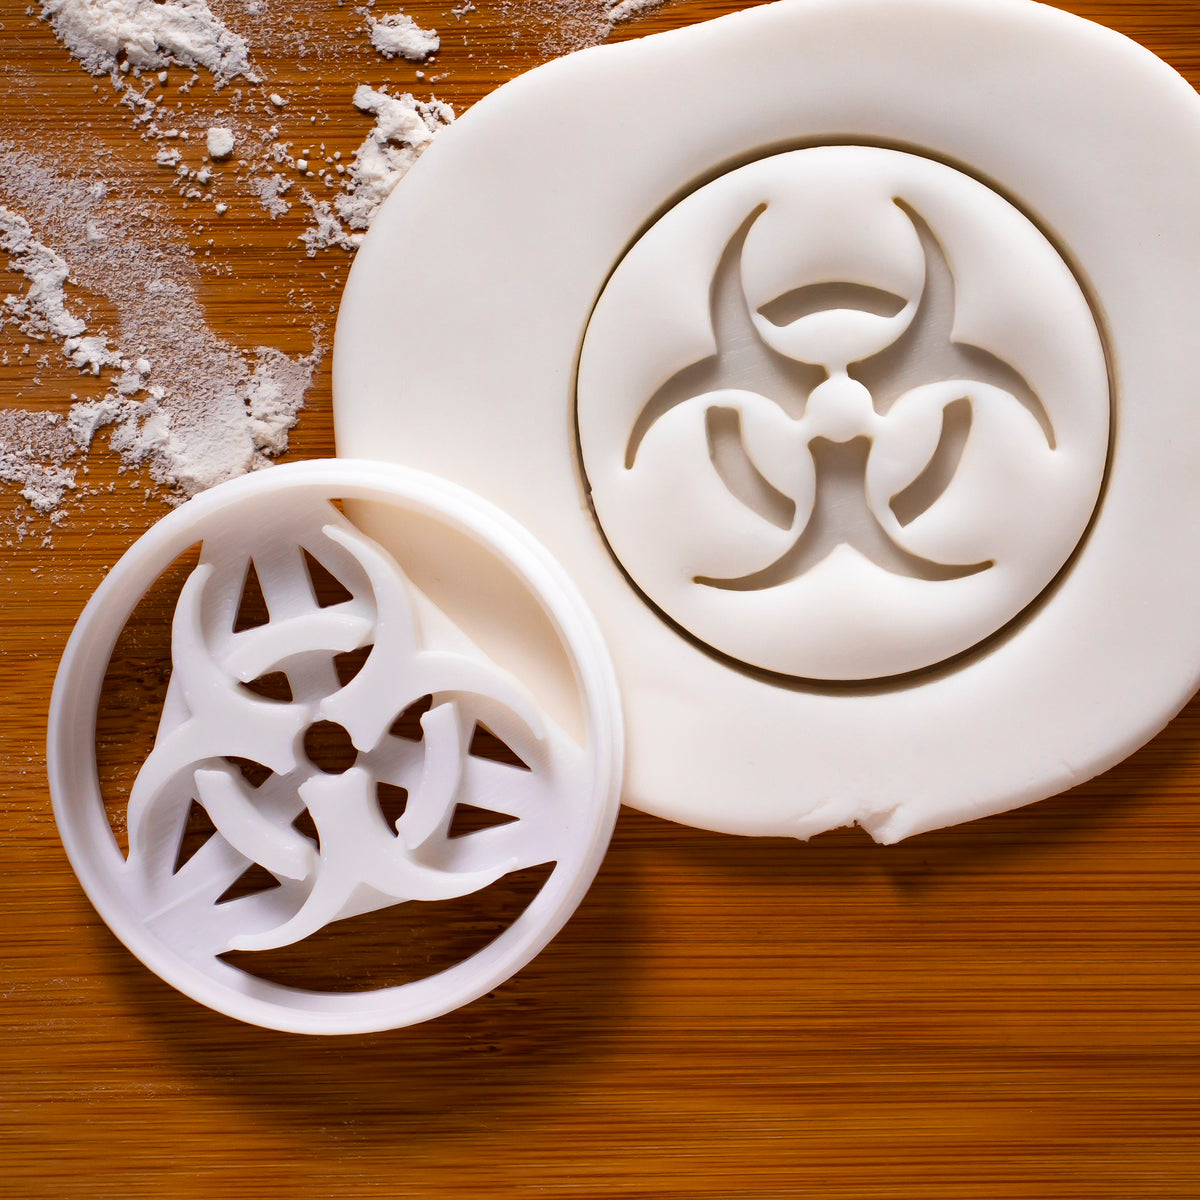 biohazard symbol cookie cutter